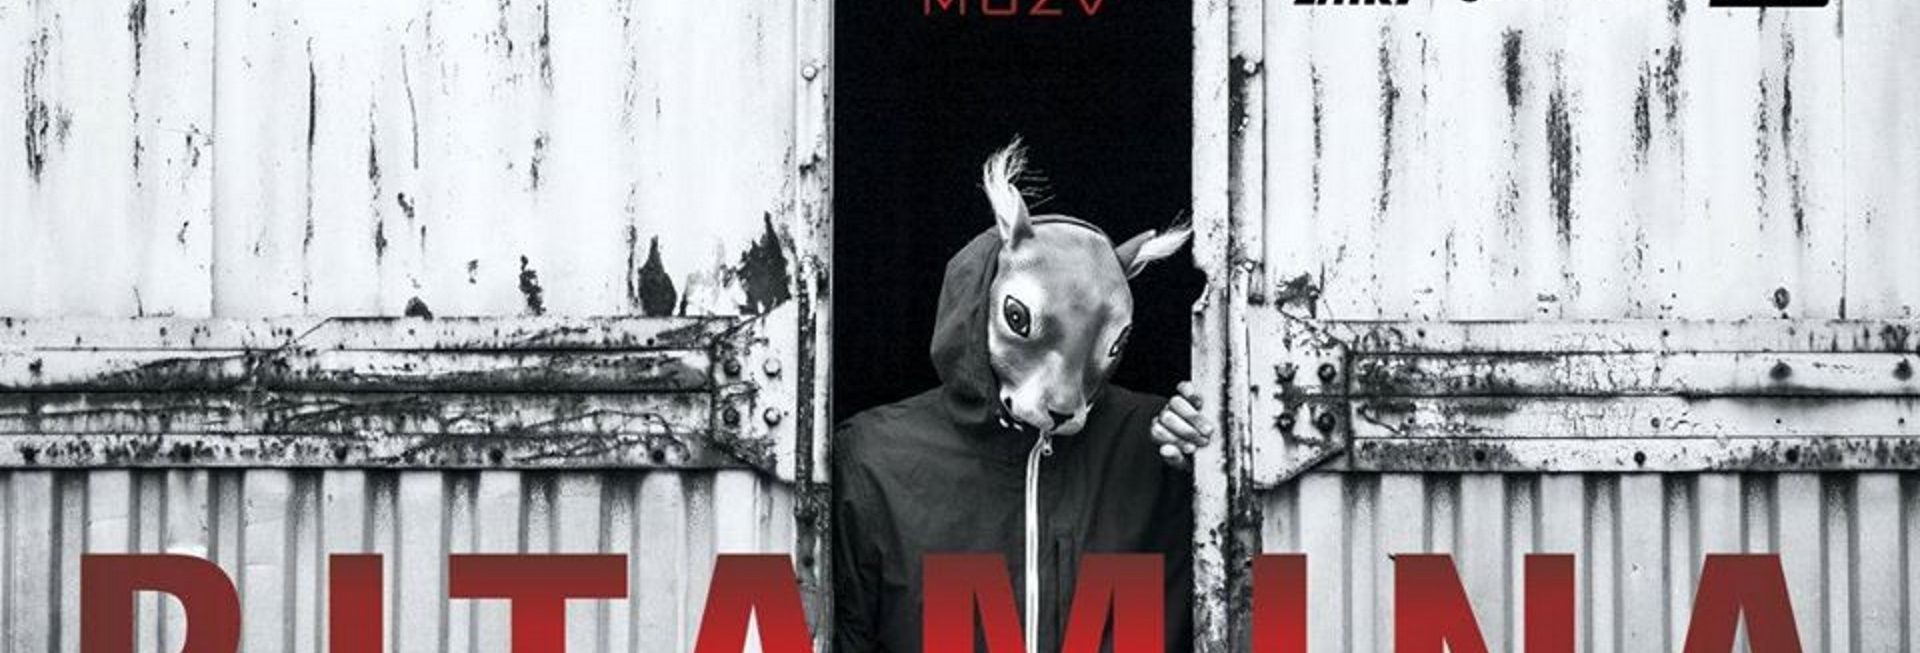 Plakat zapraszający do Olsztyna na Koncert Bitamina Fest Muza - Olsztyn 2020. Na plakacie po środku zdjęcie mężczyzny w masce królika oraz napisy zapraszające na koncert. 